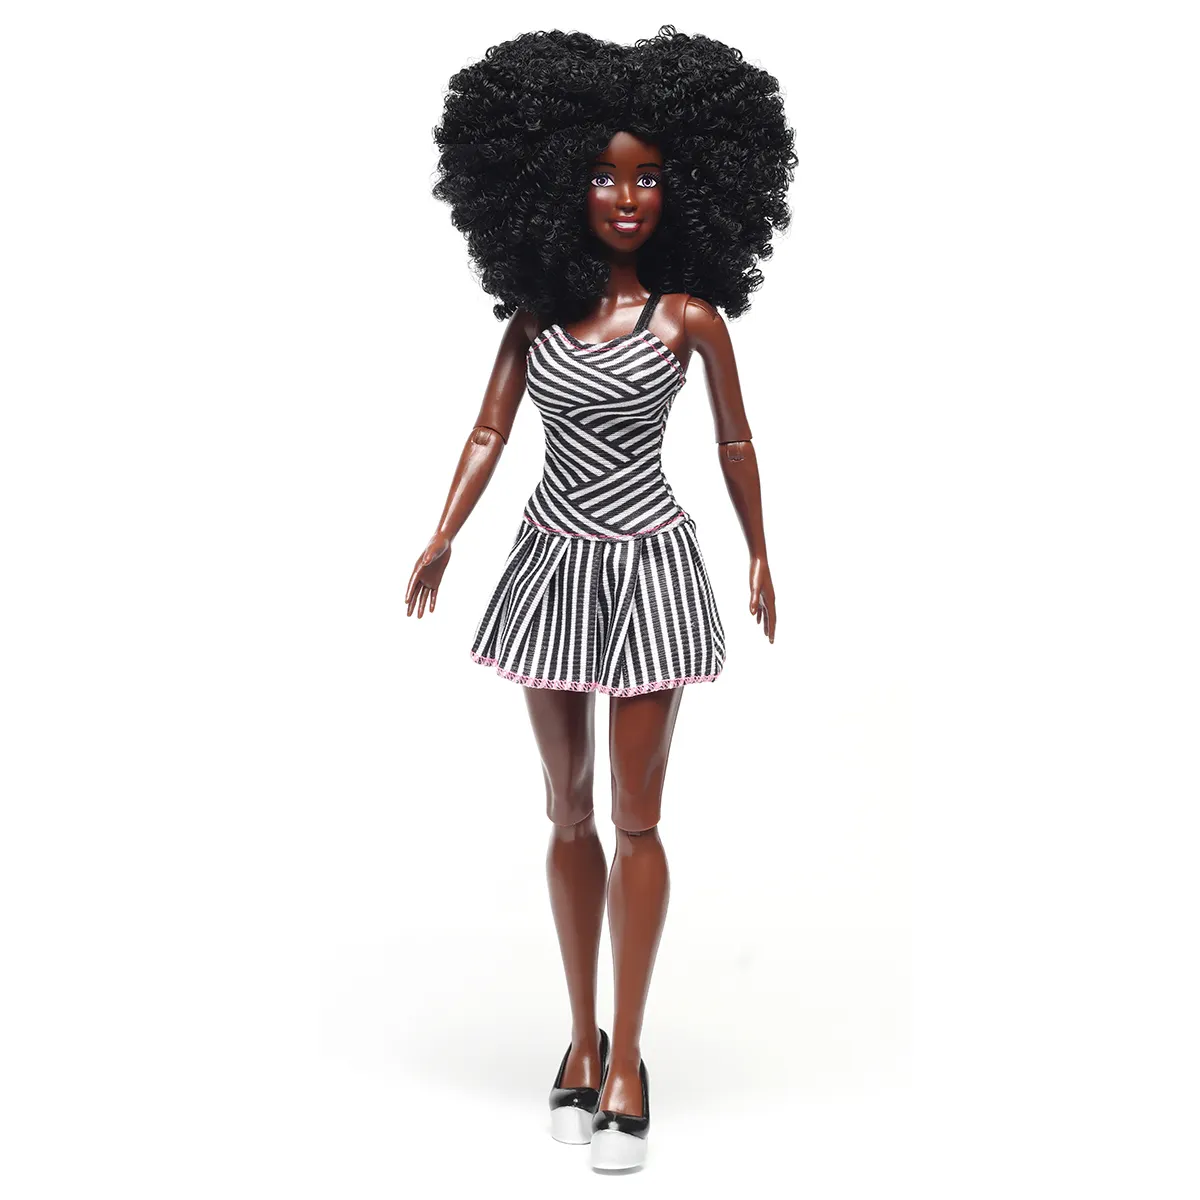 주식으로 실제 실물 같은 PVC 미국 아프리카 흑인 패션 인형 세트 11.5 인치 플라스틱 여자 인형 소녀 장난감 관절 이동 놀이 인형